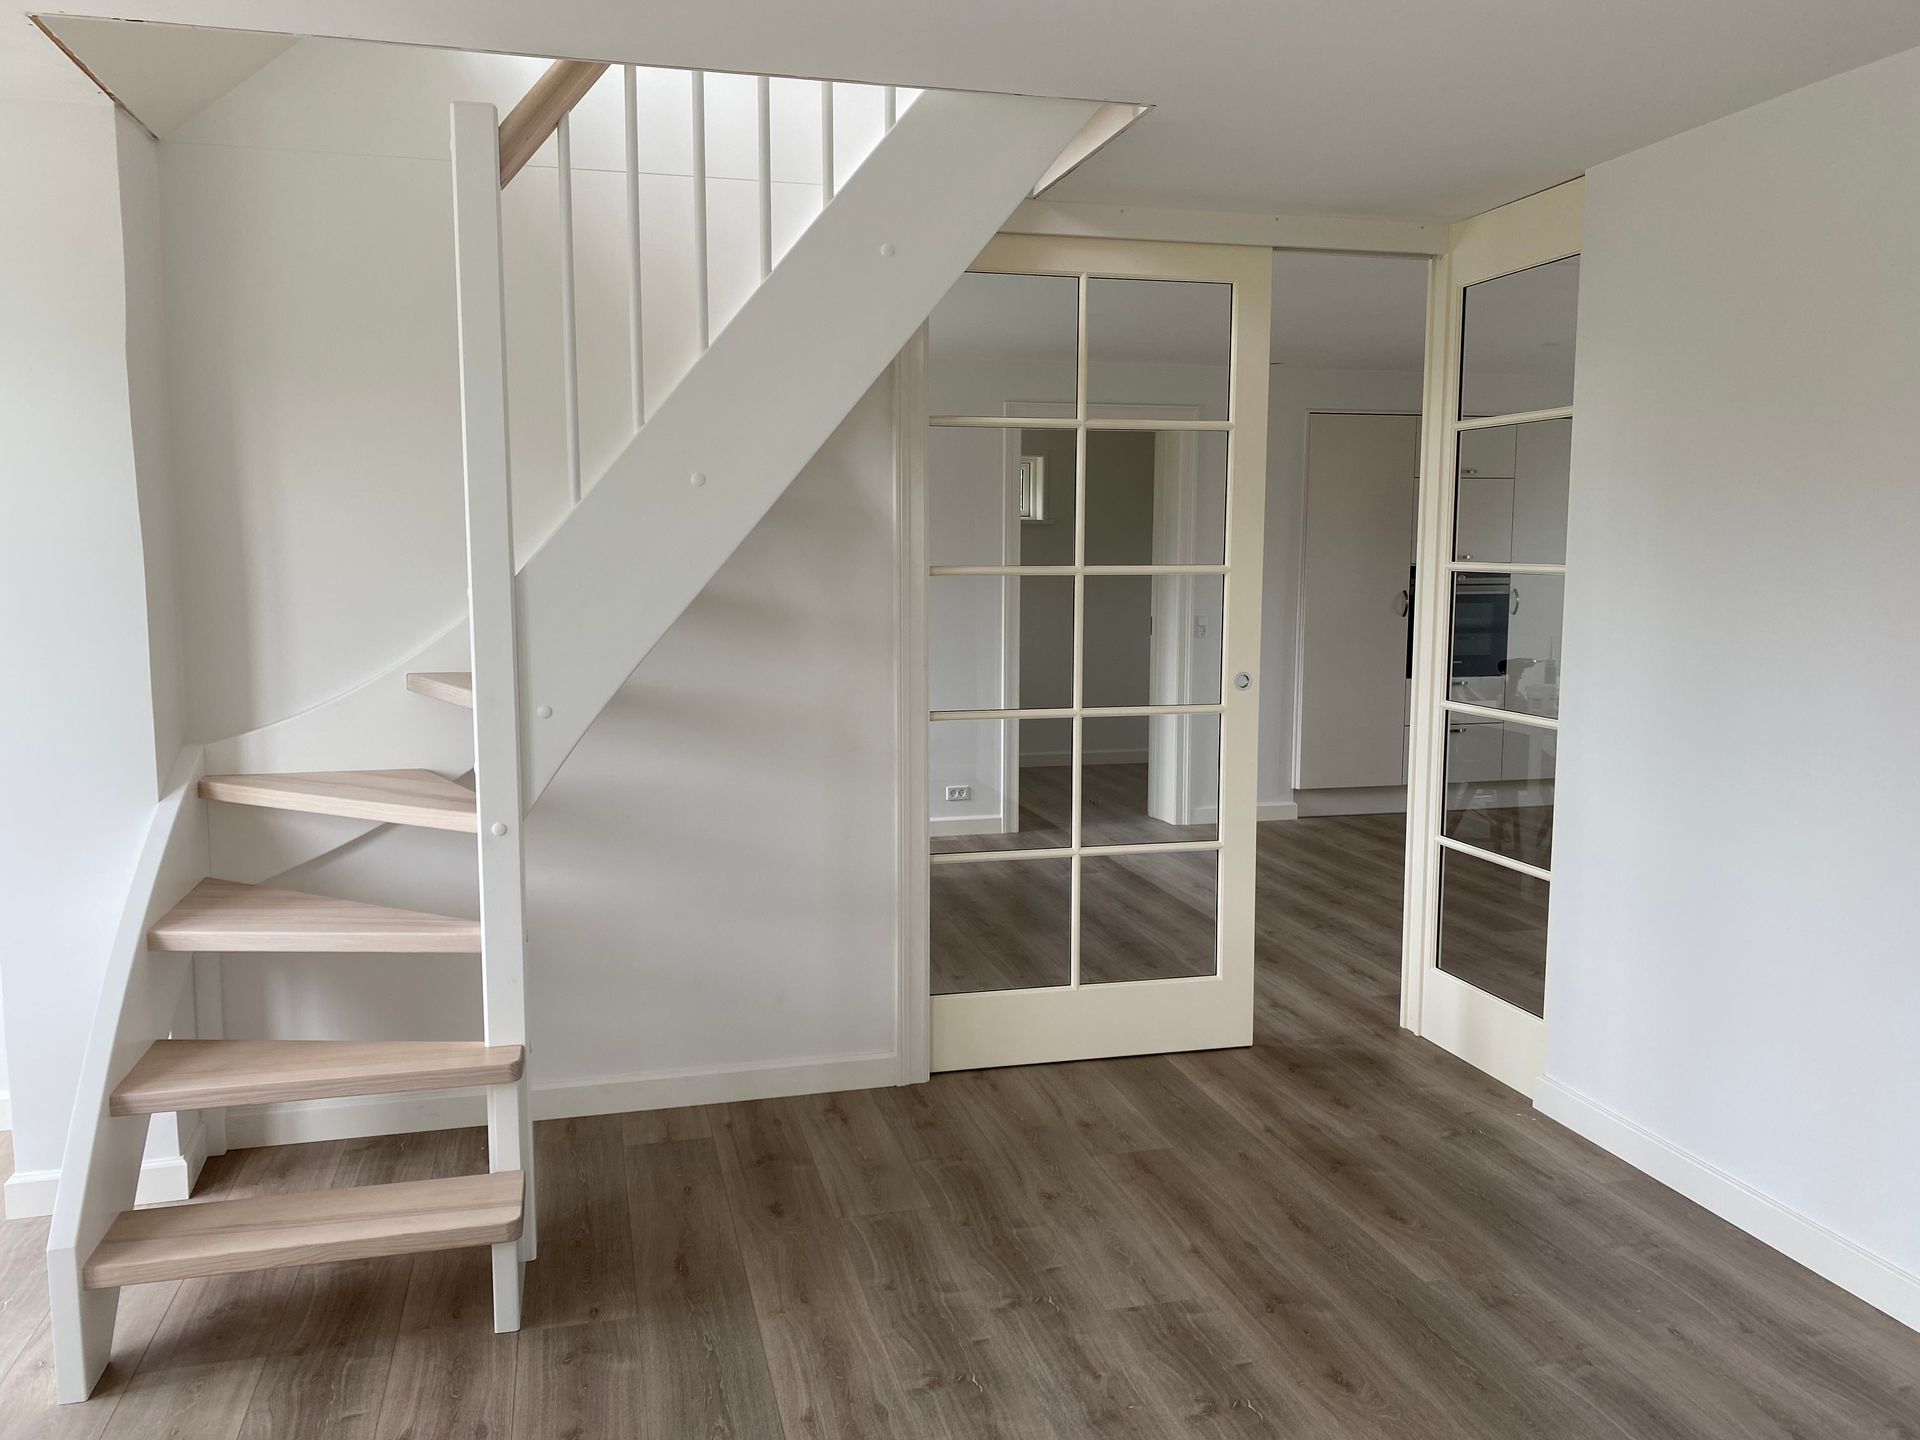 Foto af lyst rum med trappe og sprosset glasdør